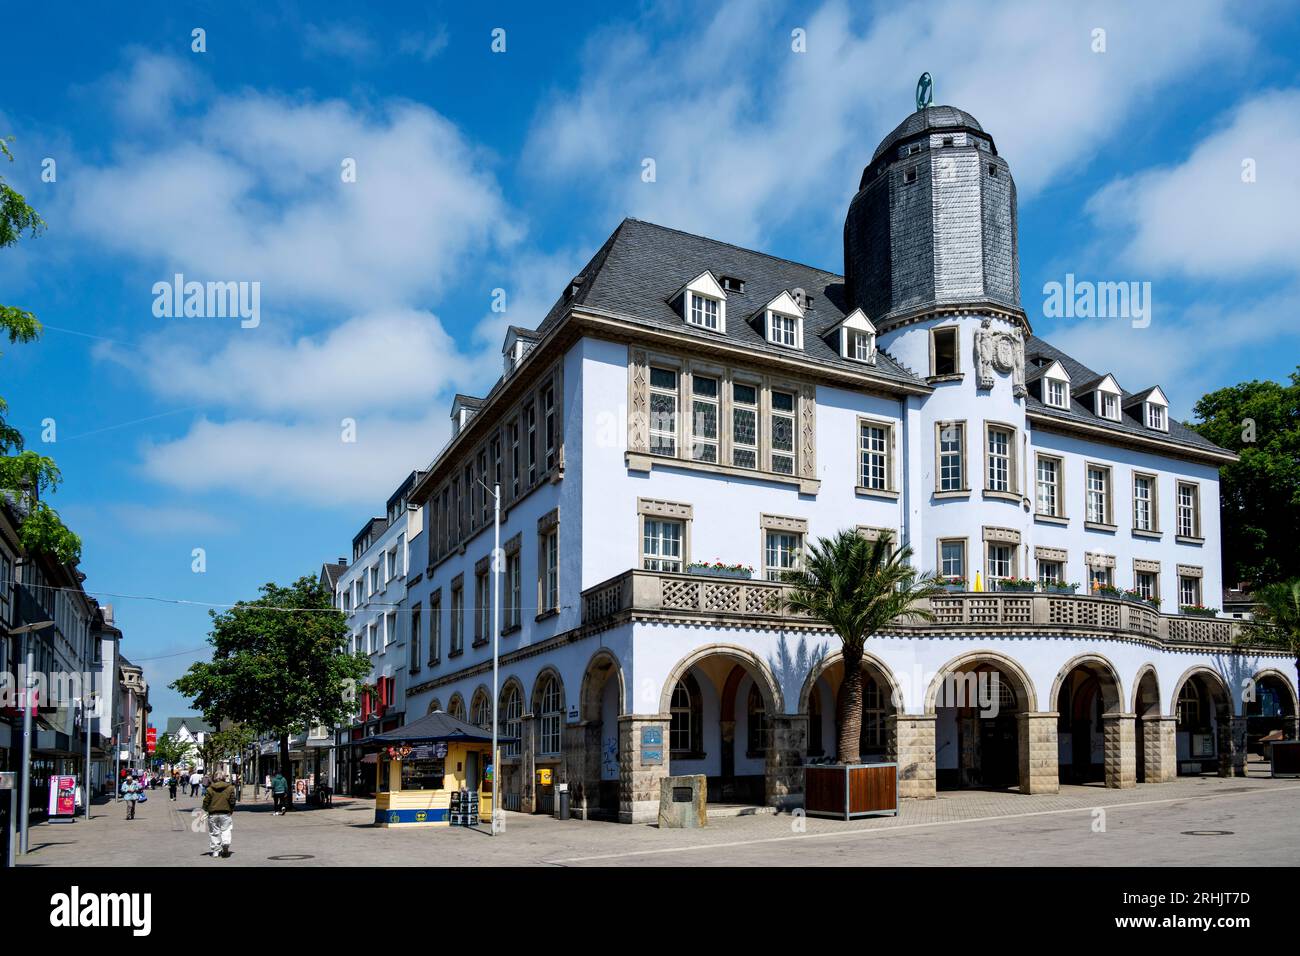 Deutschland, NRW, Märkischer Kreis, Menden, Marktplatz von Menden mit Altem Rathaus, erbaut 1914 nach Entwurf von Carl Moritz Stock Photo